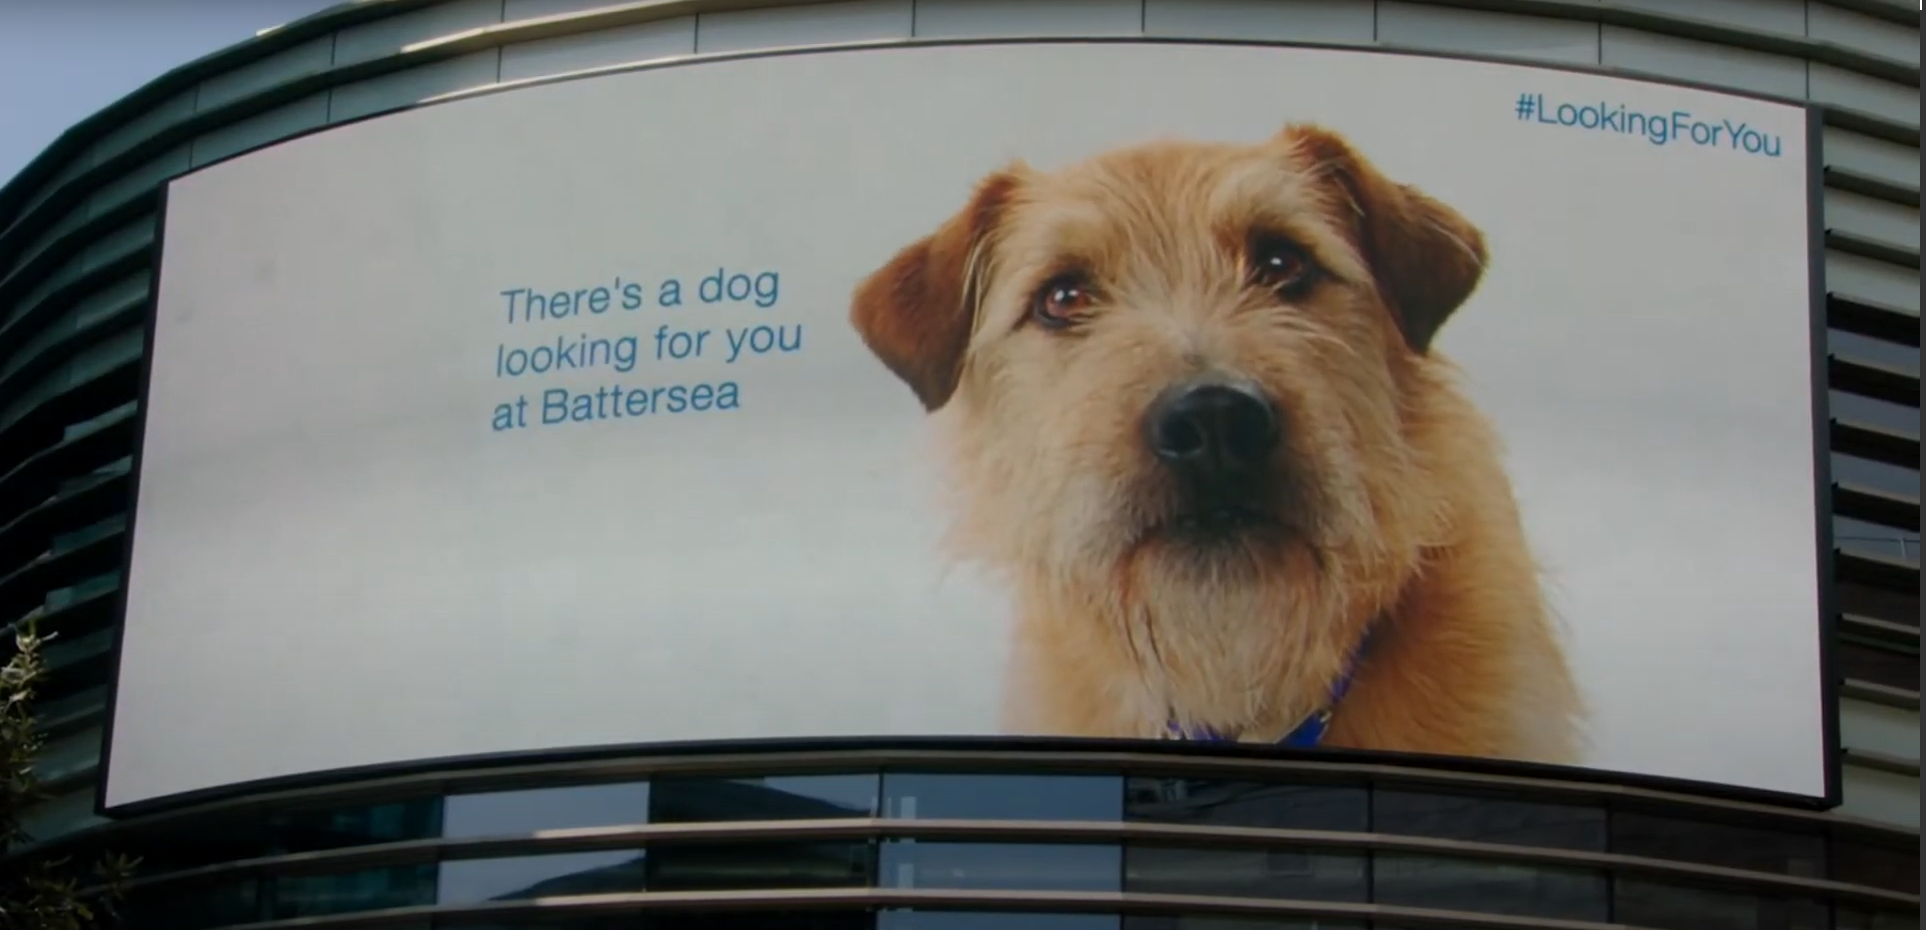 A dog on a billboard